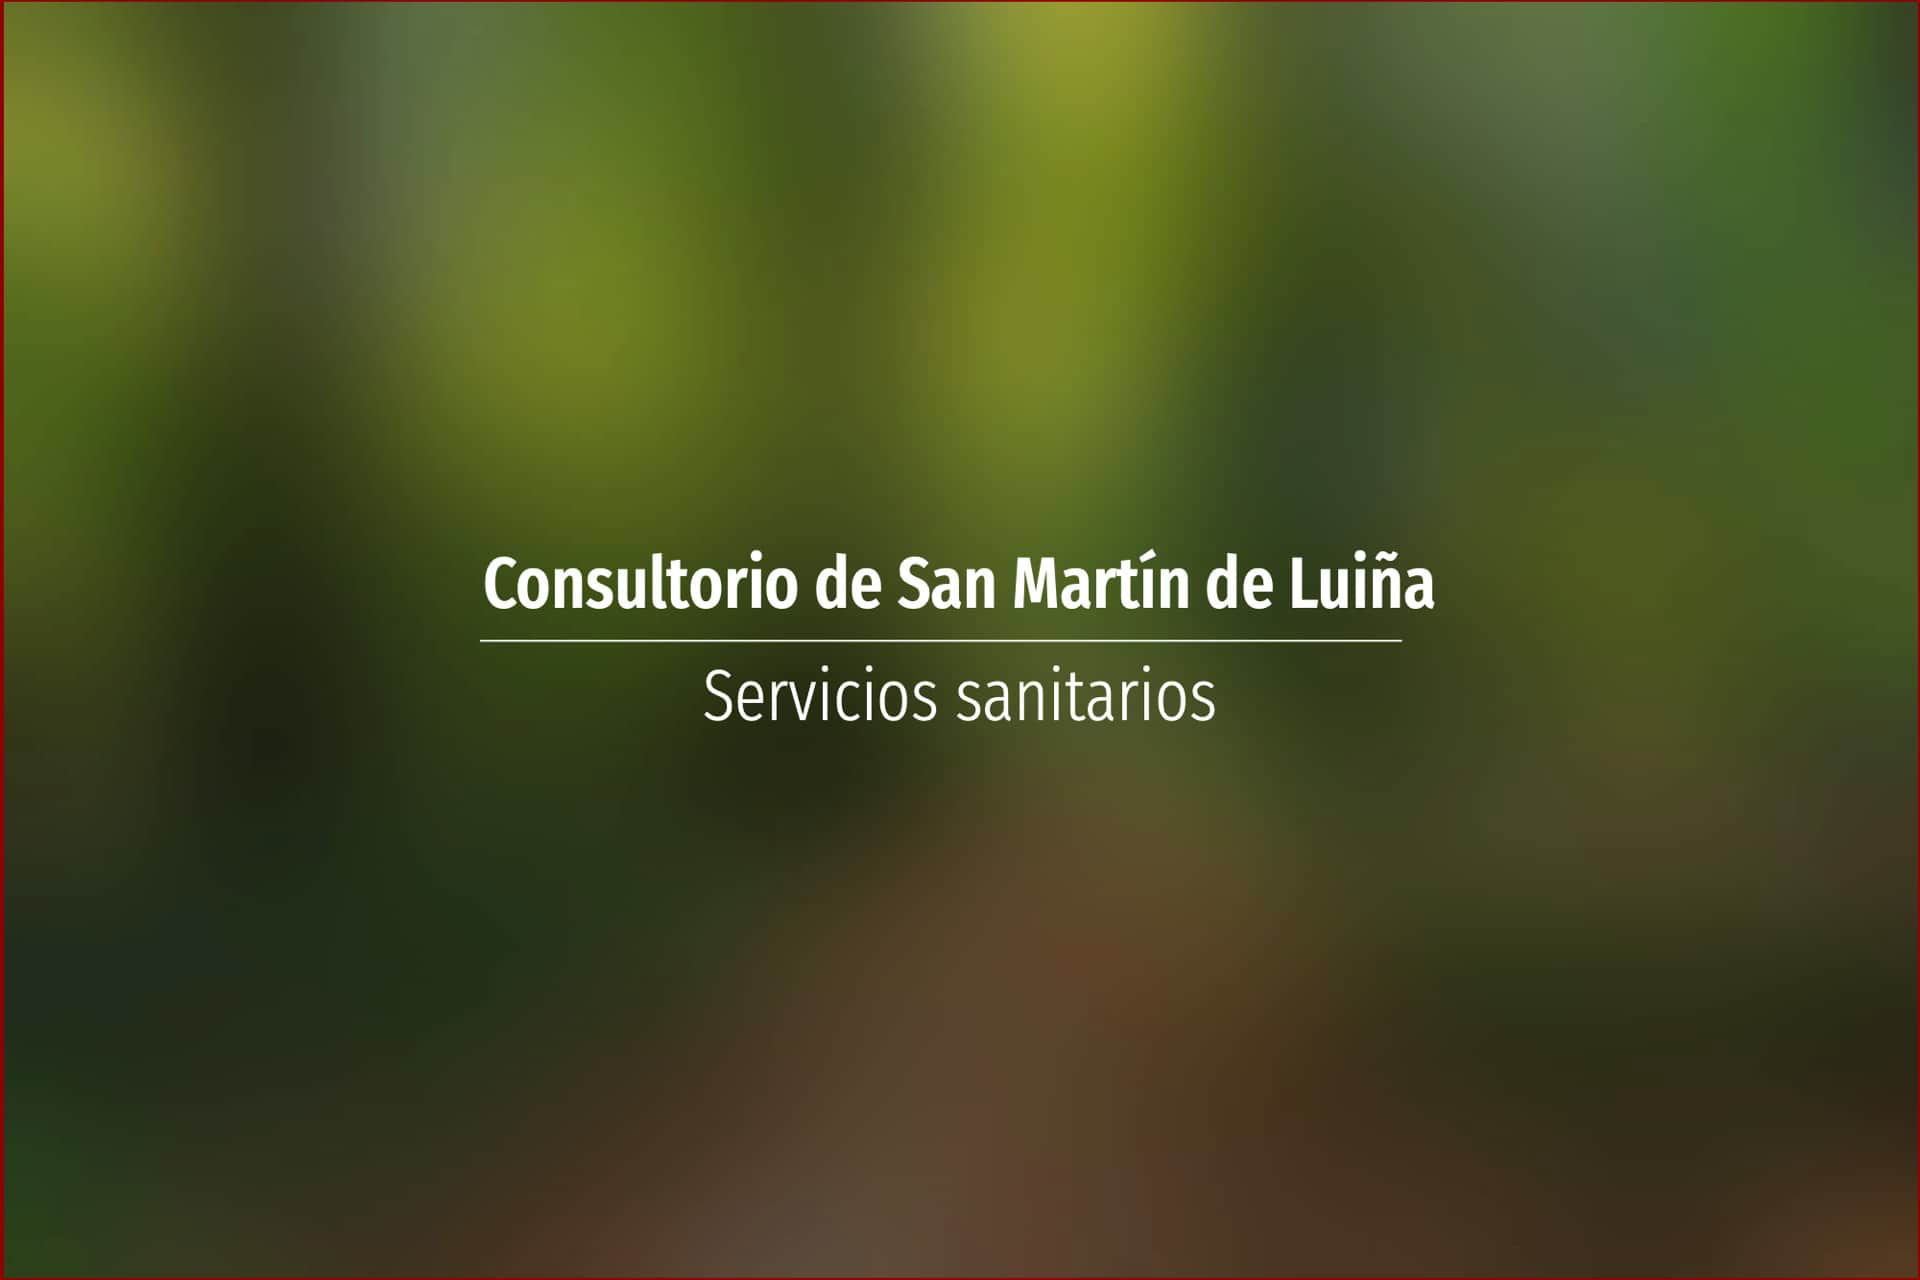 Consultorio de San Martín de Luiña